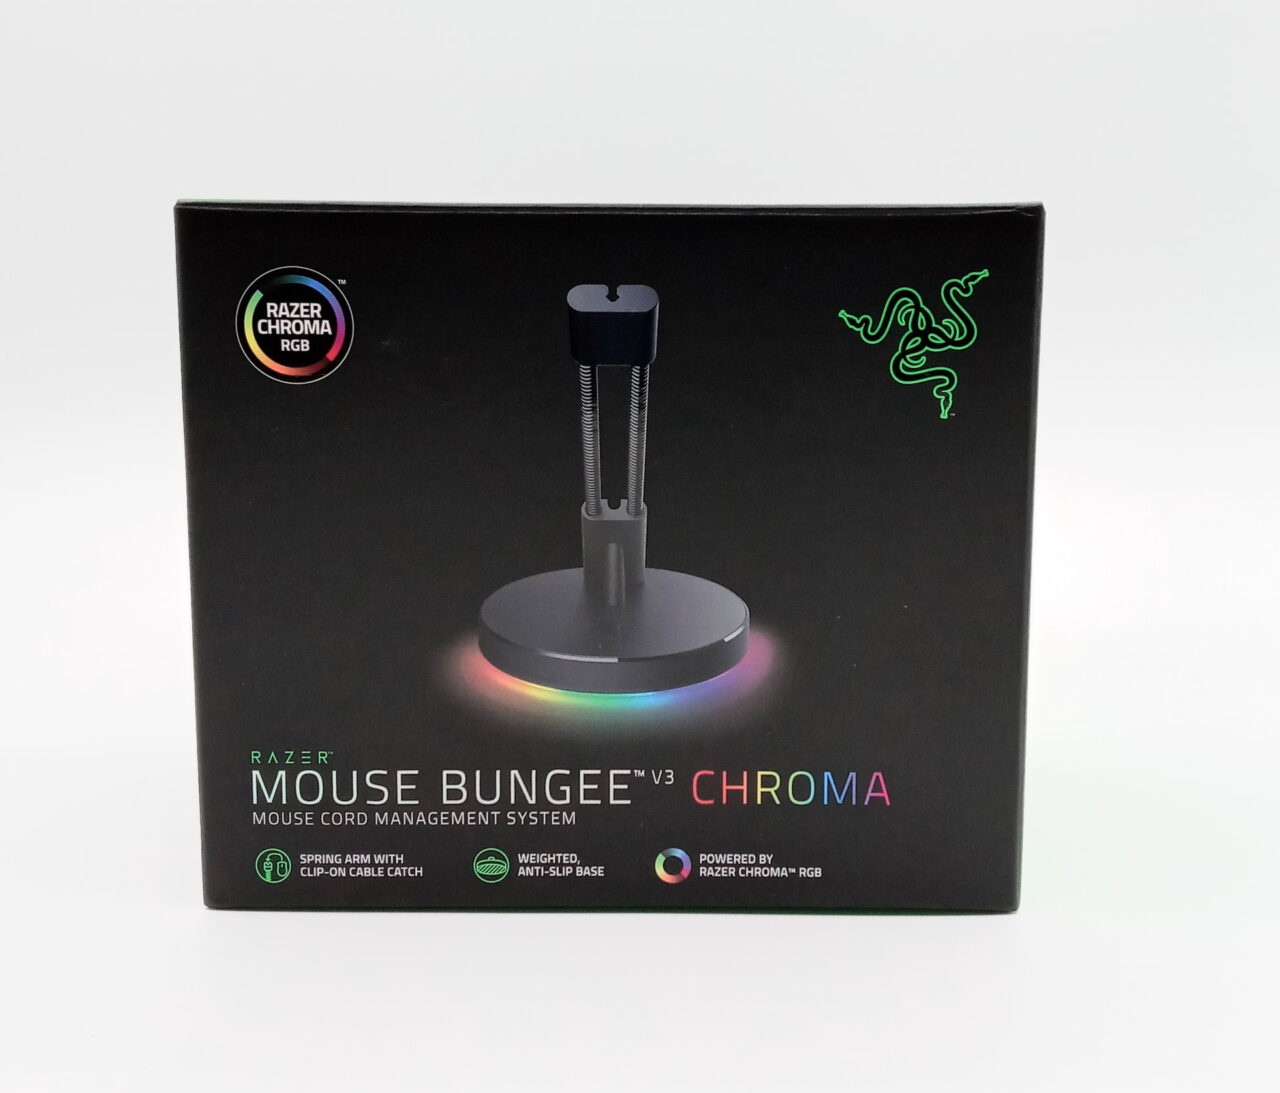 Razer Mouse Bungee v3 Chroma Review